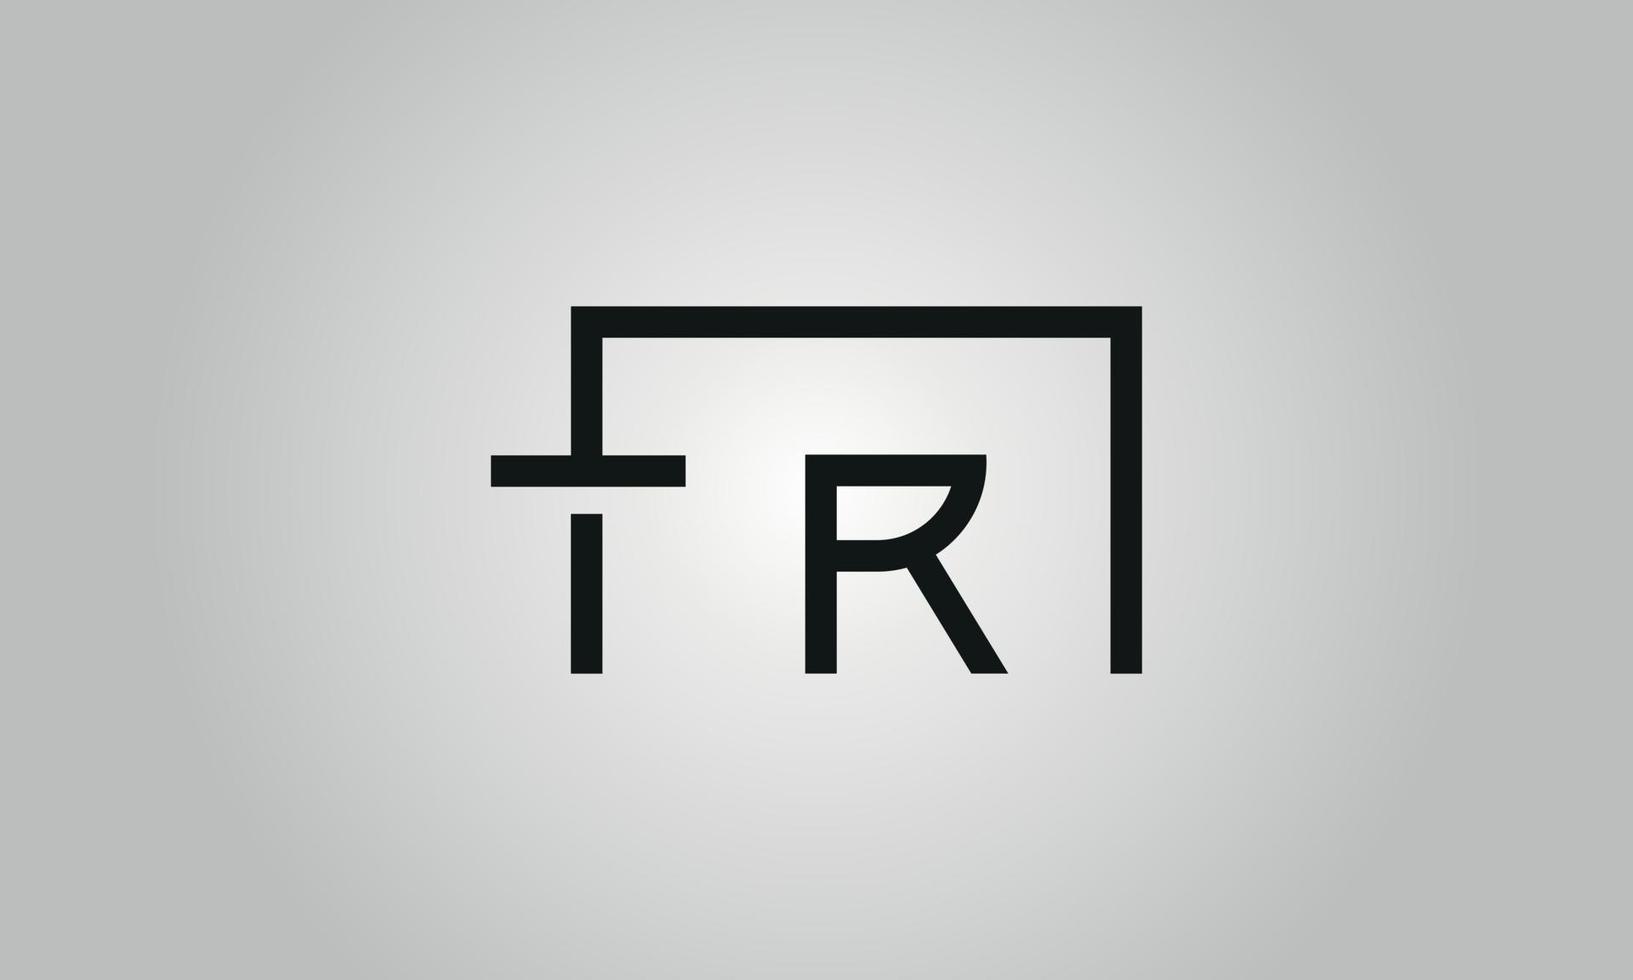 brief tr logo ontwerp. tr logo met plein vorm in zwart kleuren vector vrij vector sjabloon.